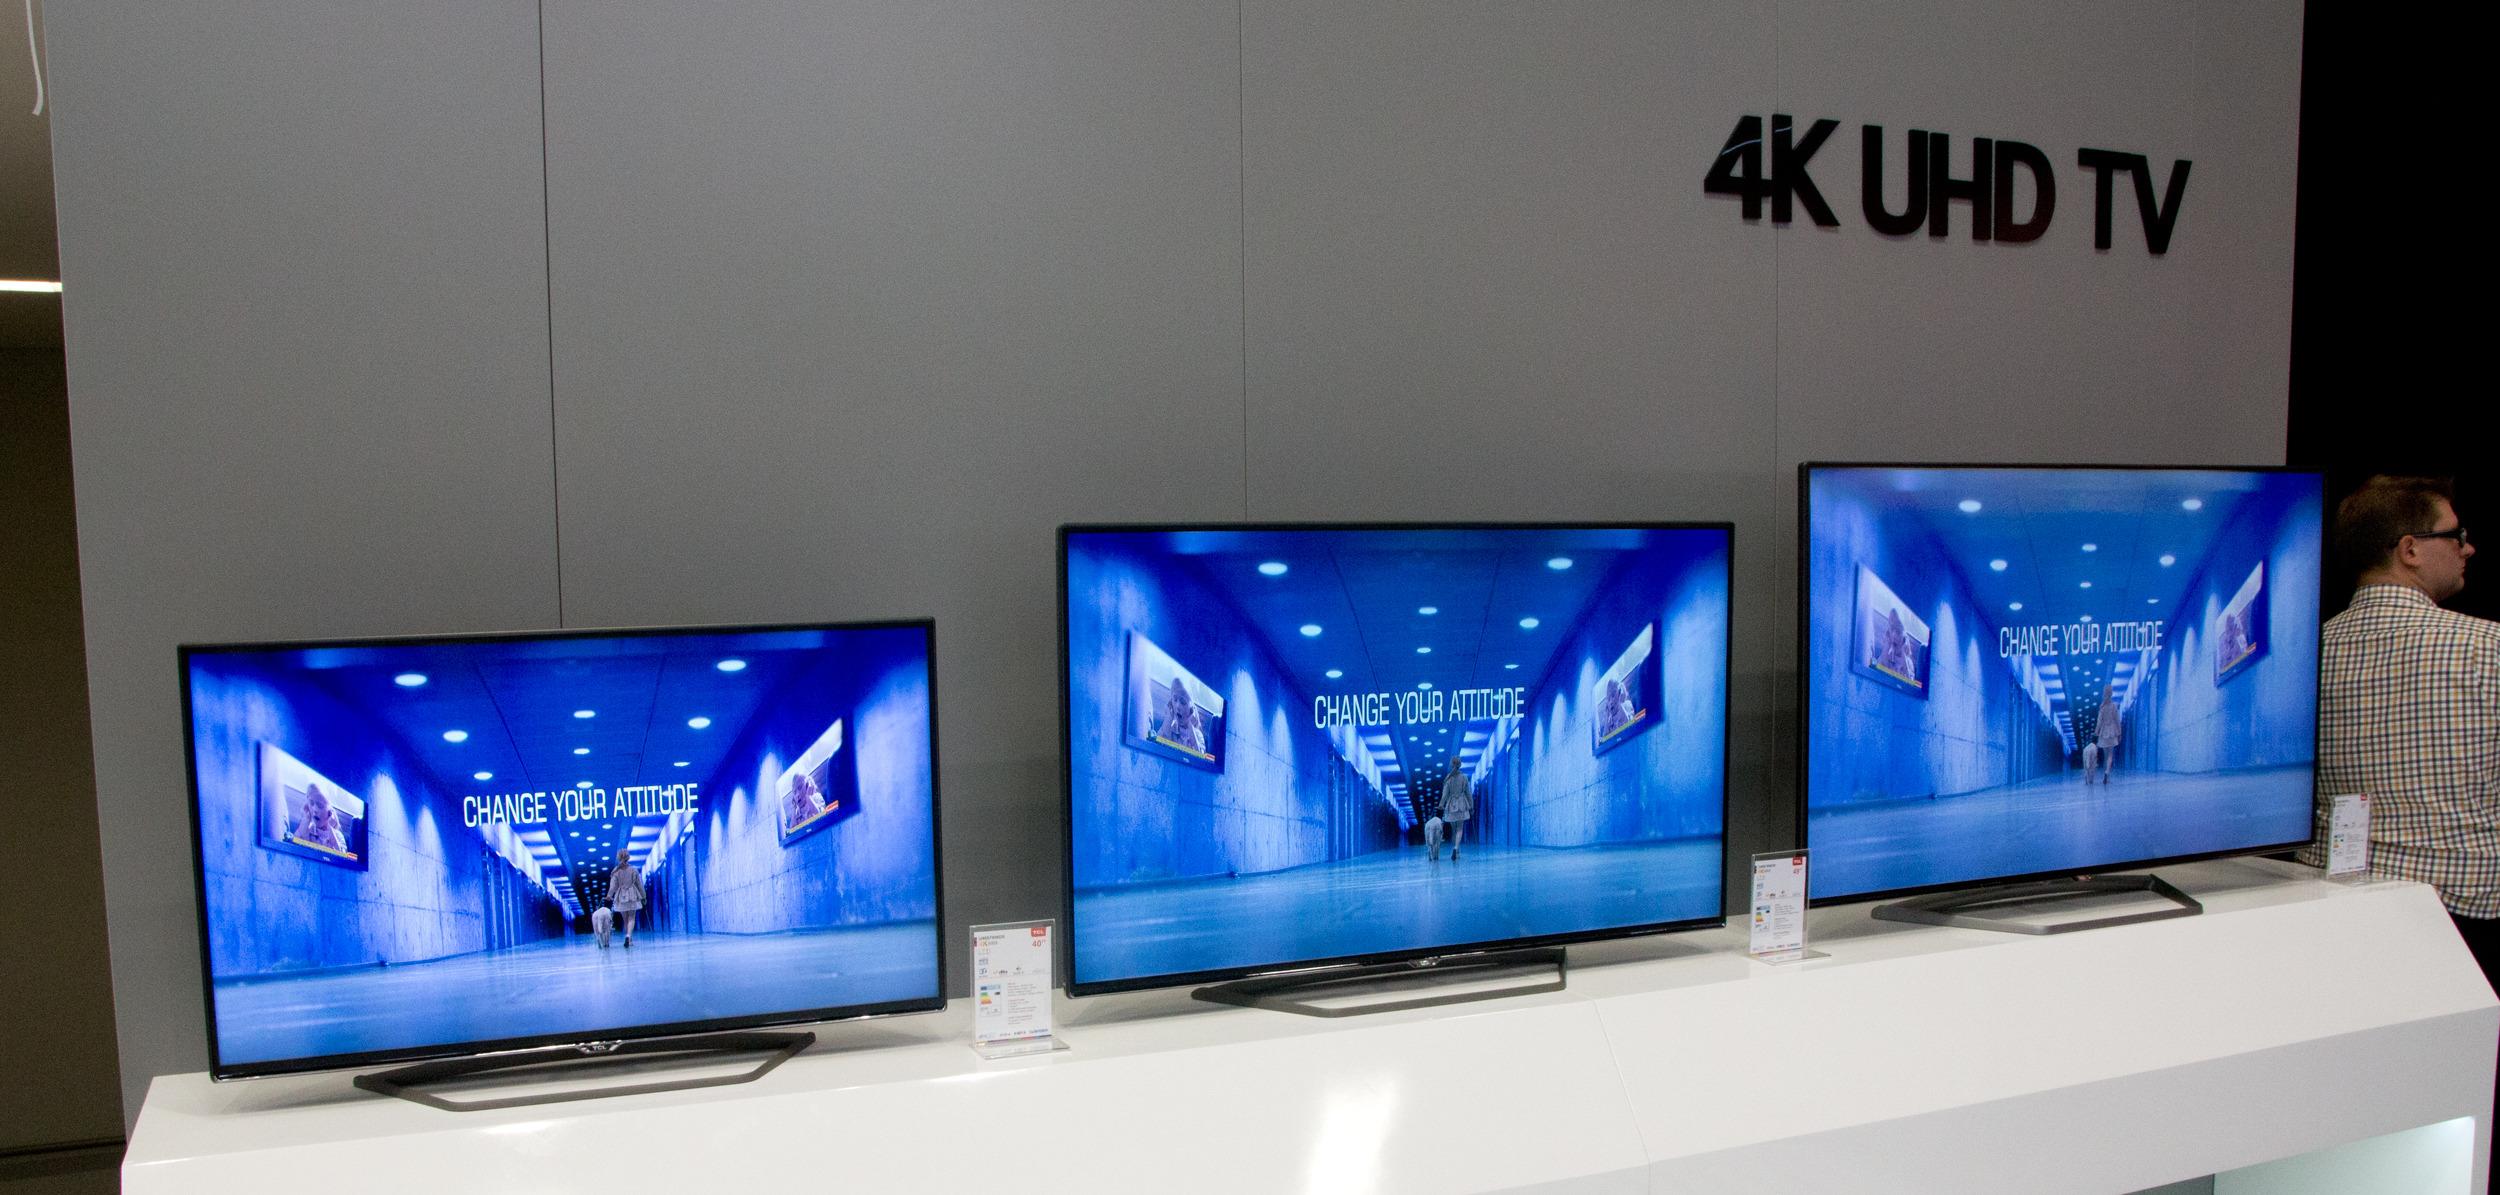 Ingul lover rimelige 4K-TV-er til nordmenn, og kvaliteten skal være like god som konkurrentene.Foto: Rolf B. Wegner, Hardware.no